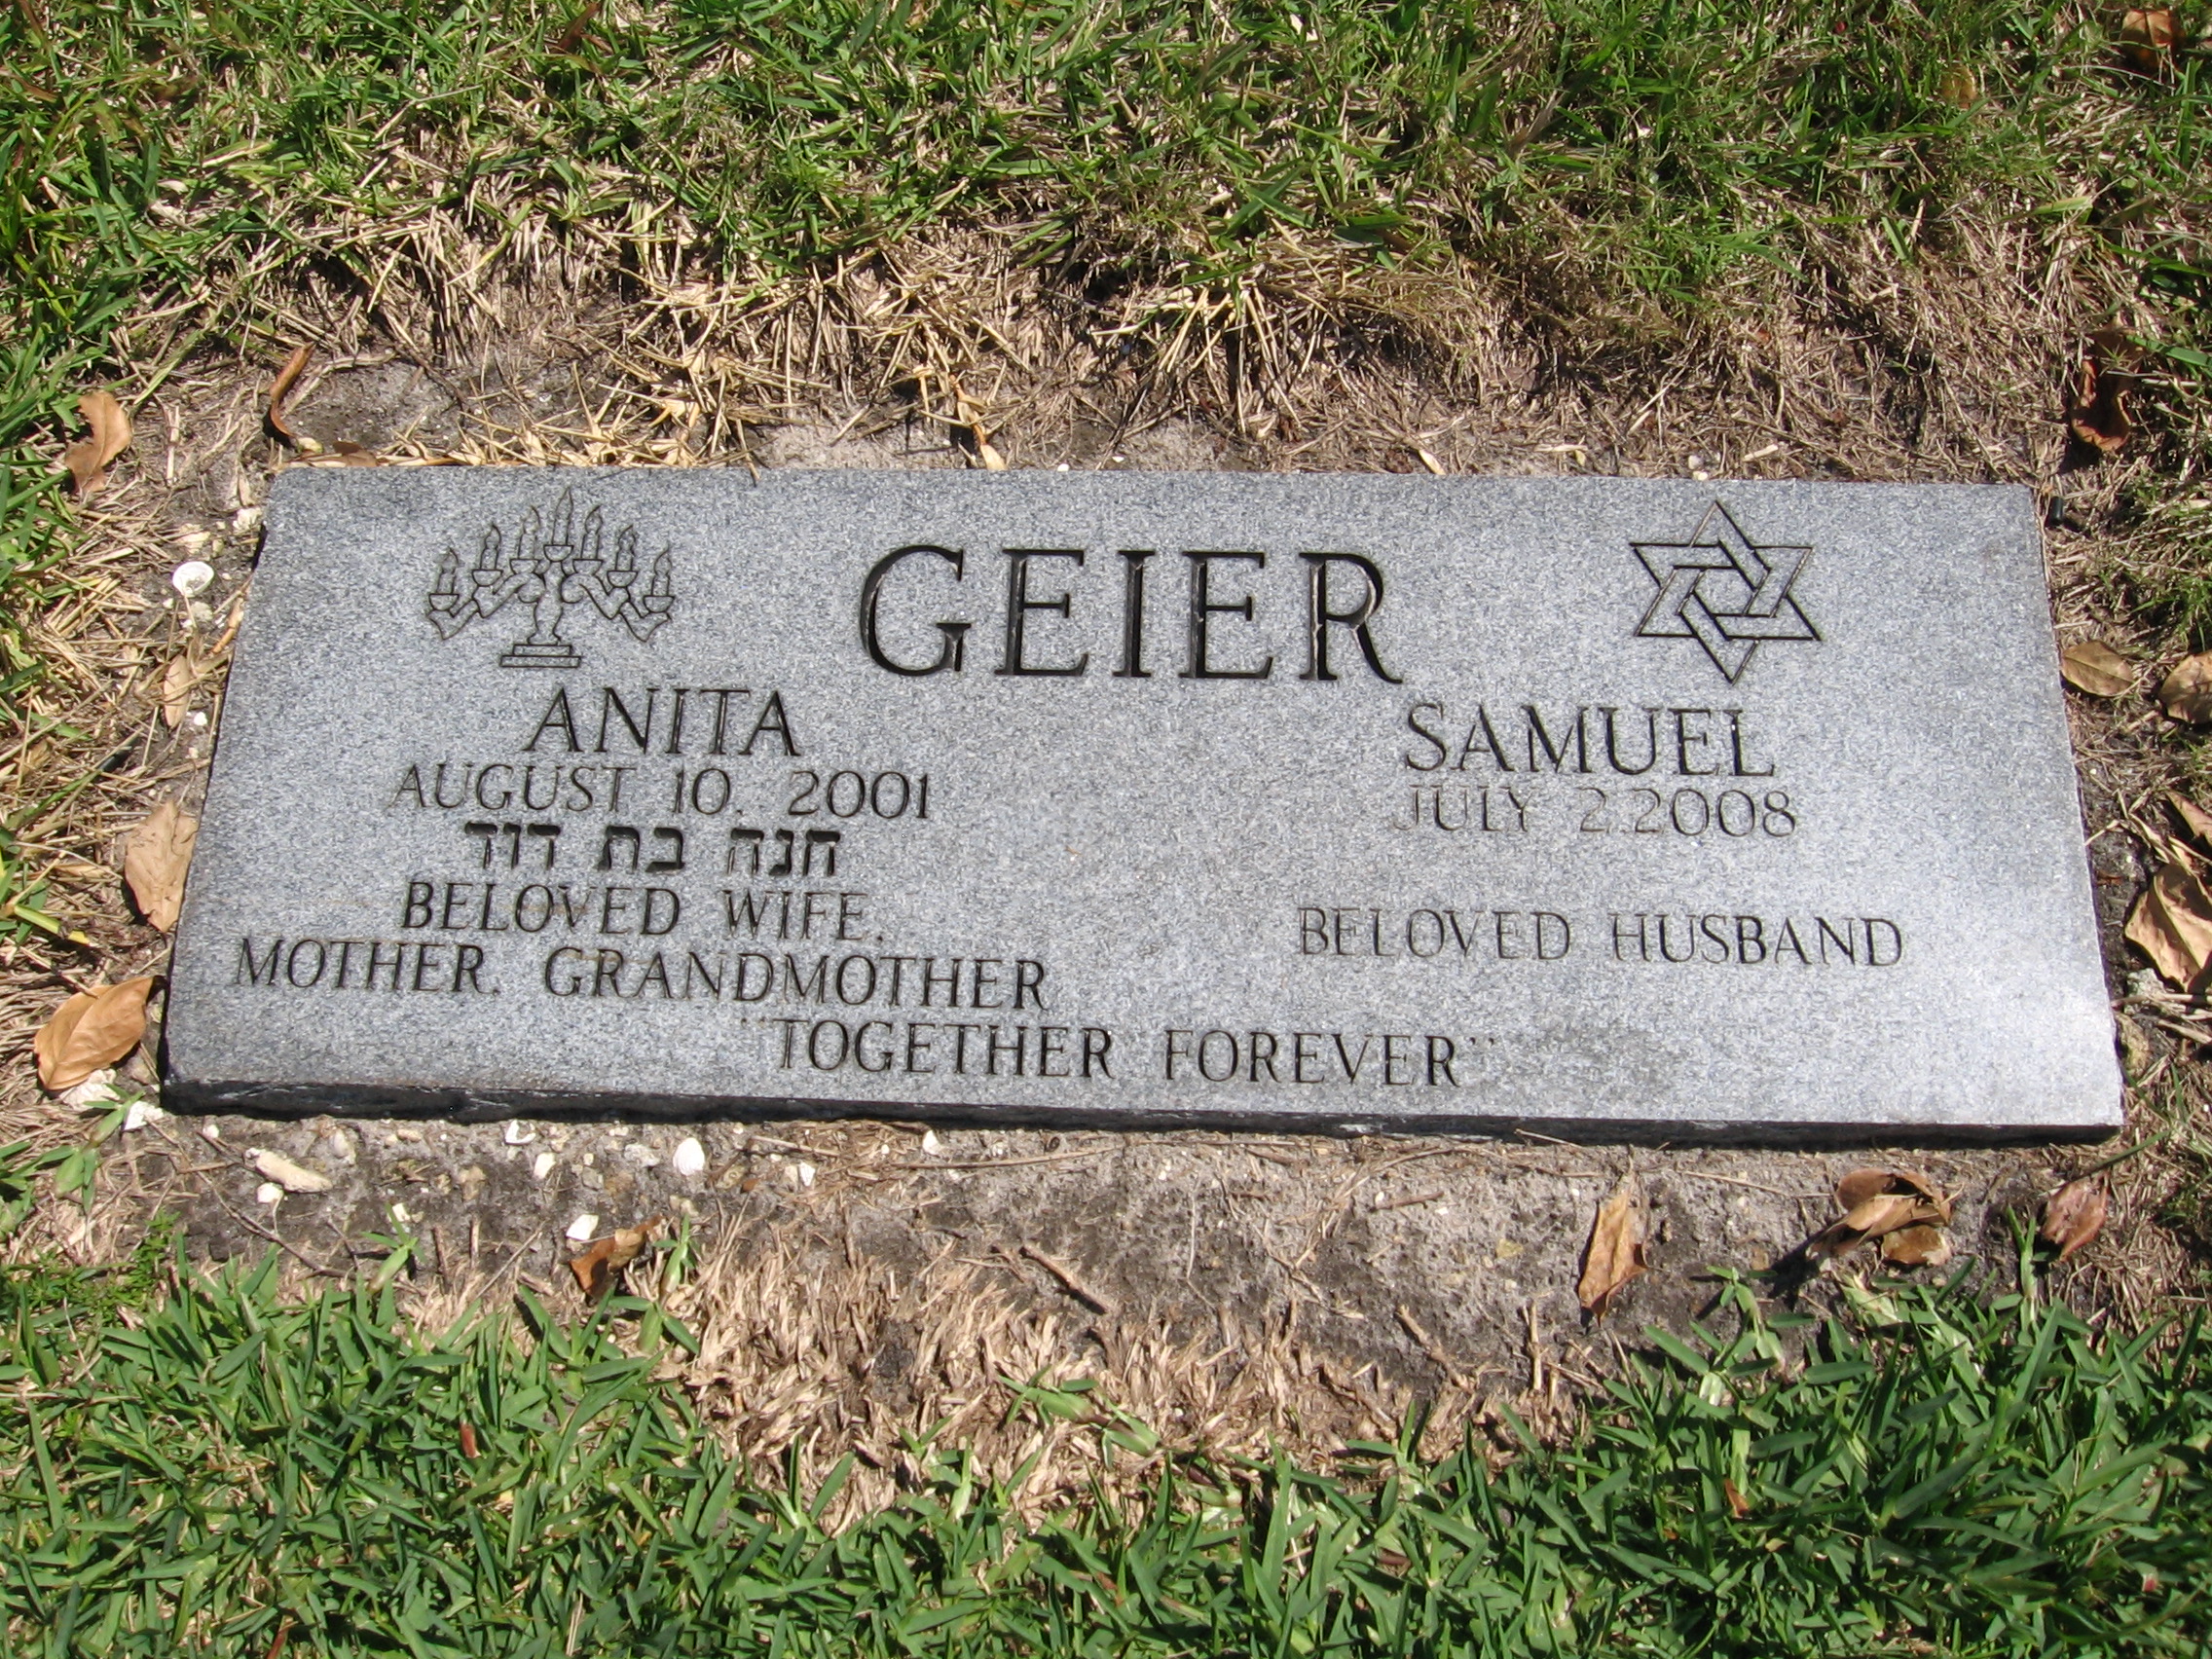 Samuel Geier